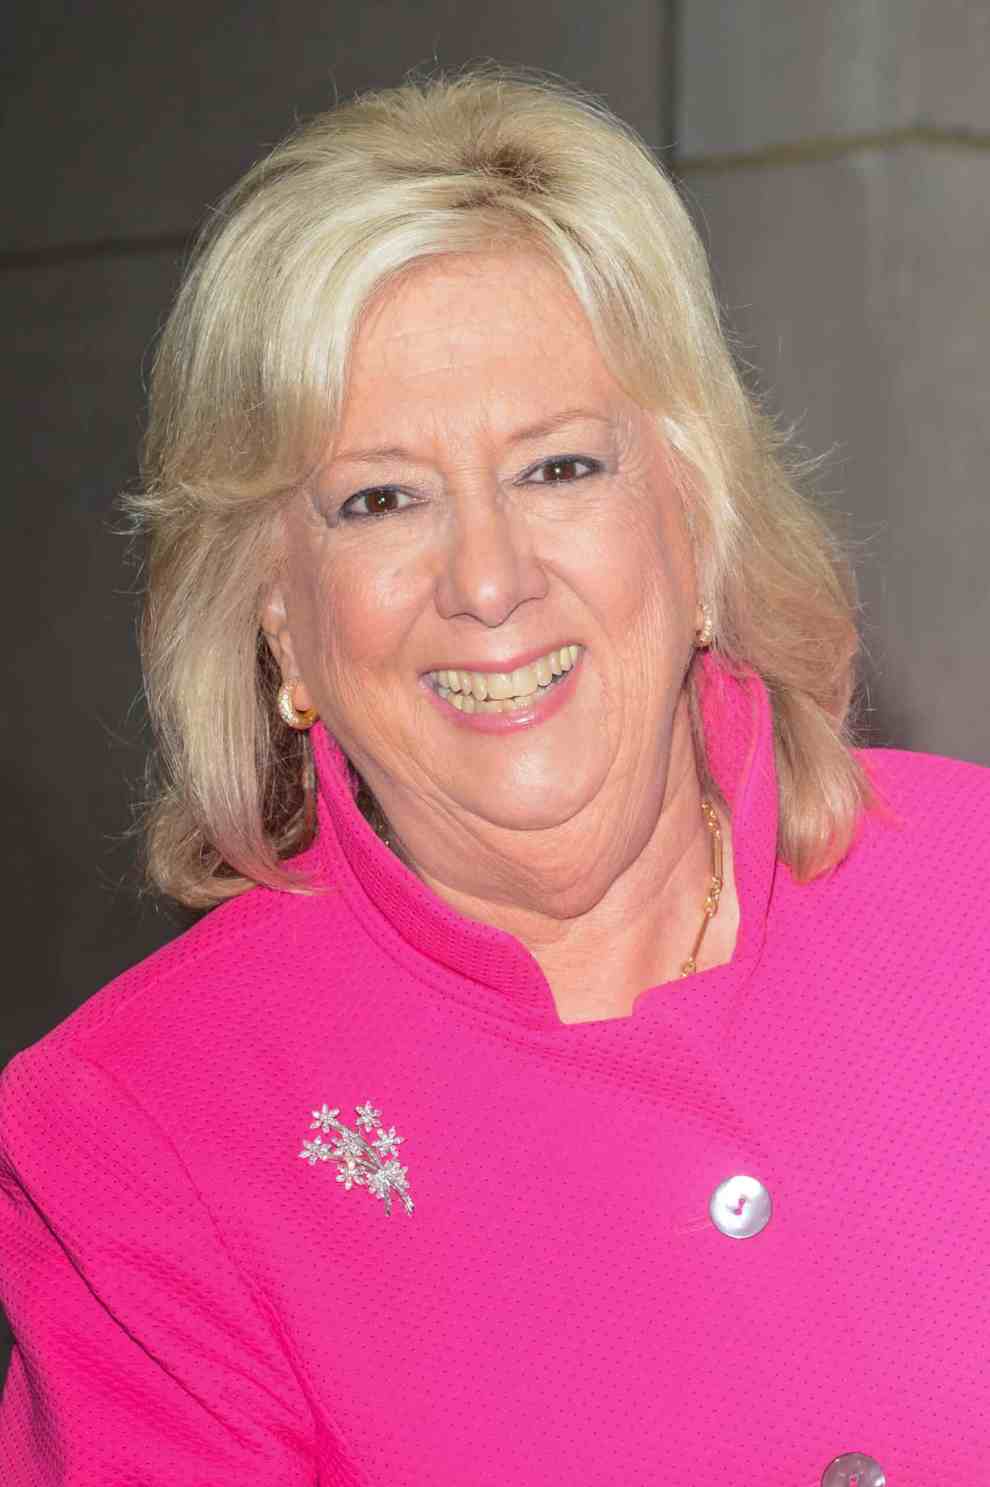 Linda Fairstein wearing pink